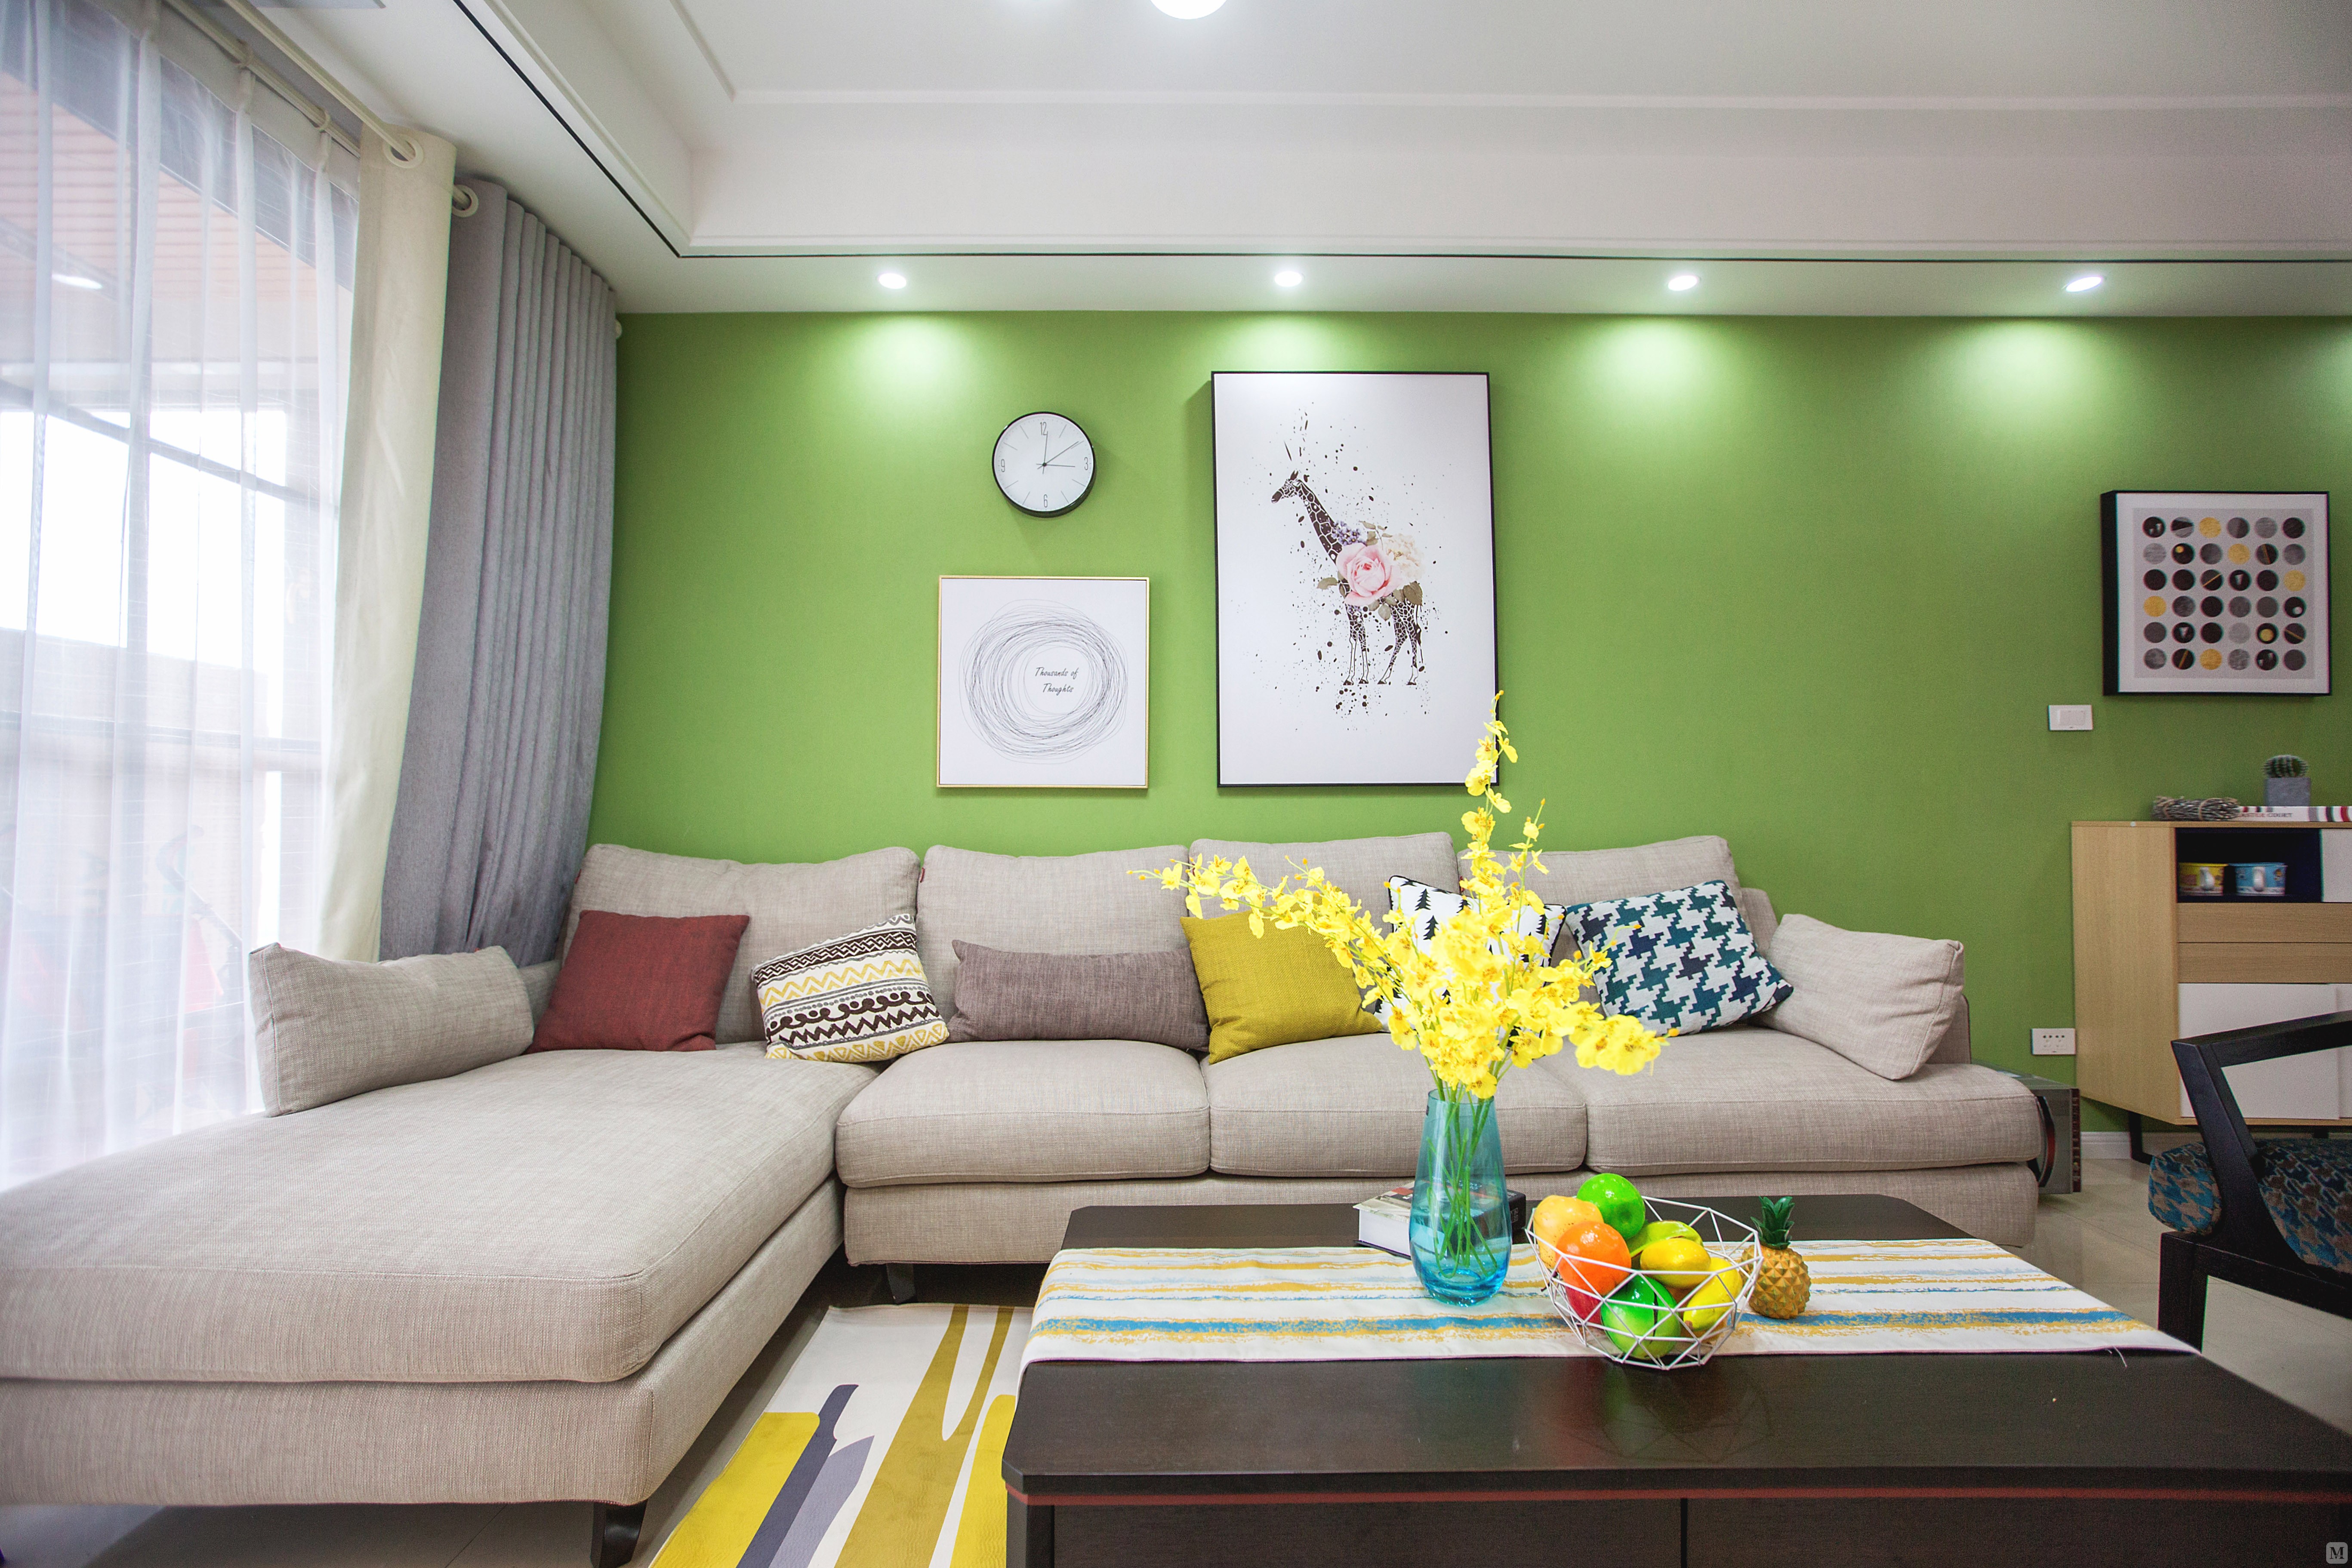 绿色也是护眼的颜色放在家里给人感觉清爽舒适,整个空间颜色干净清新